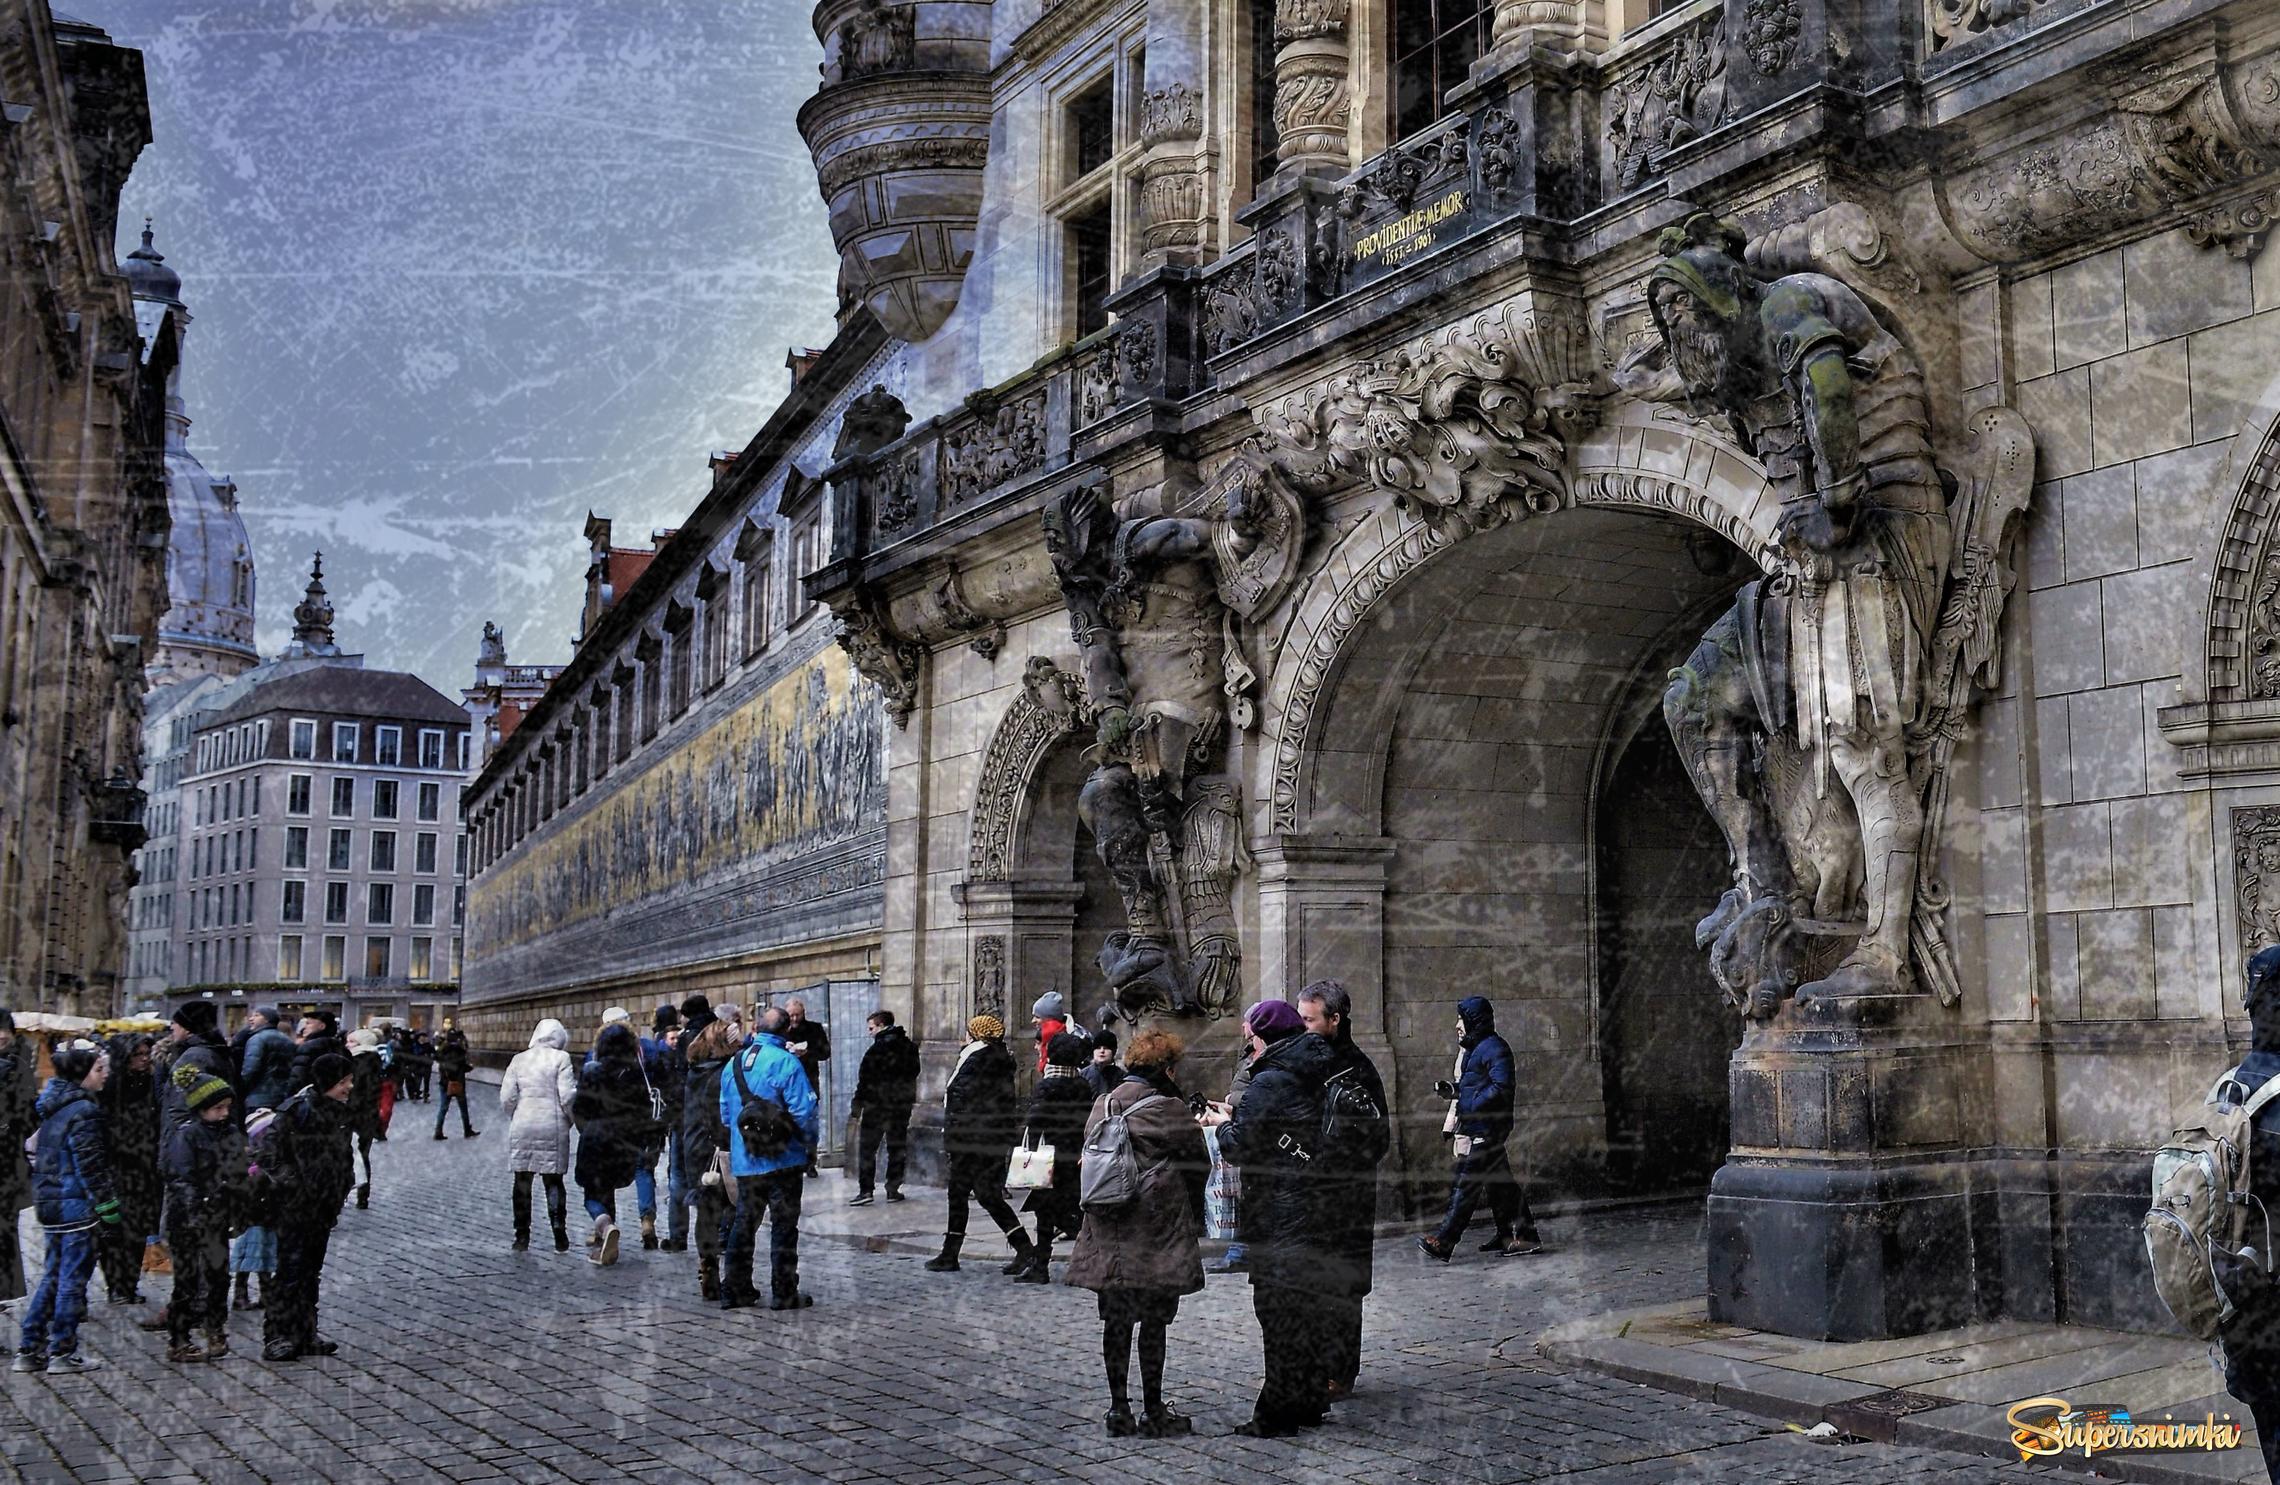 Дрезден. У входа в галерею "Шествие Князей"